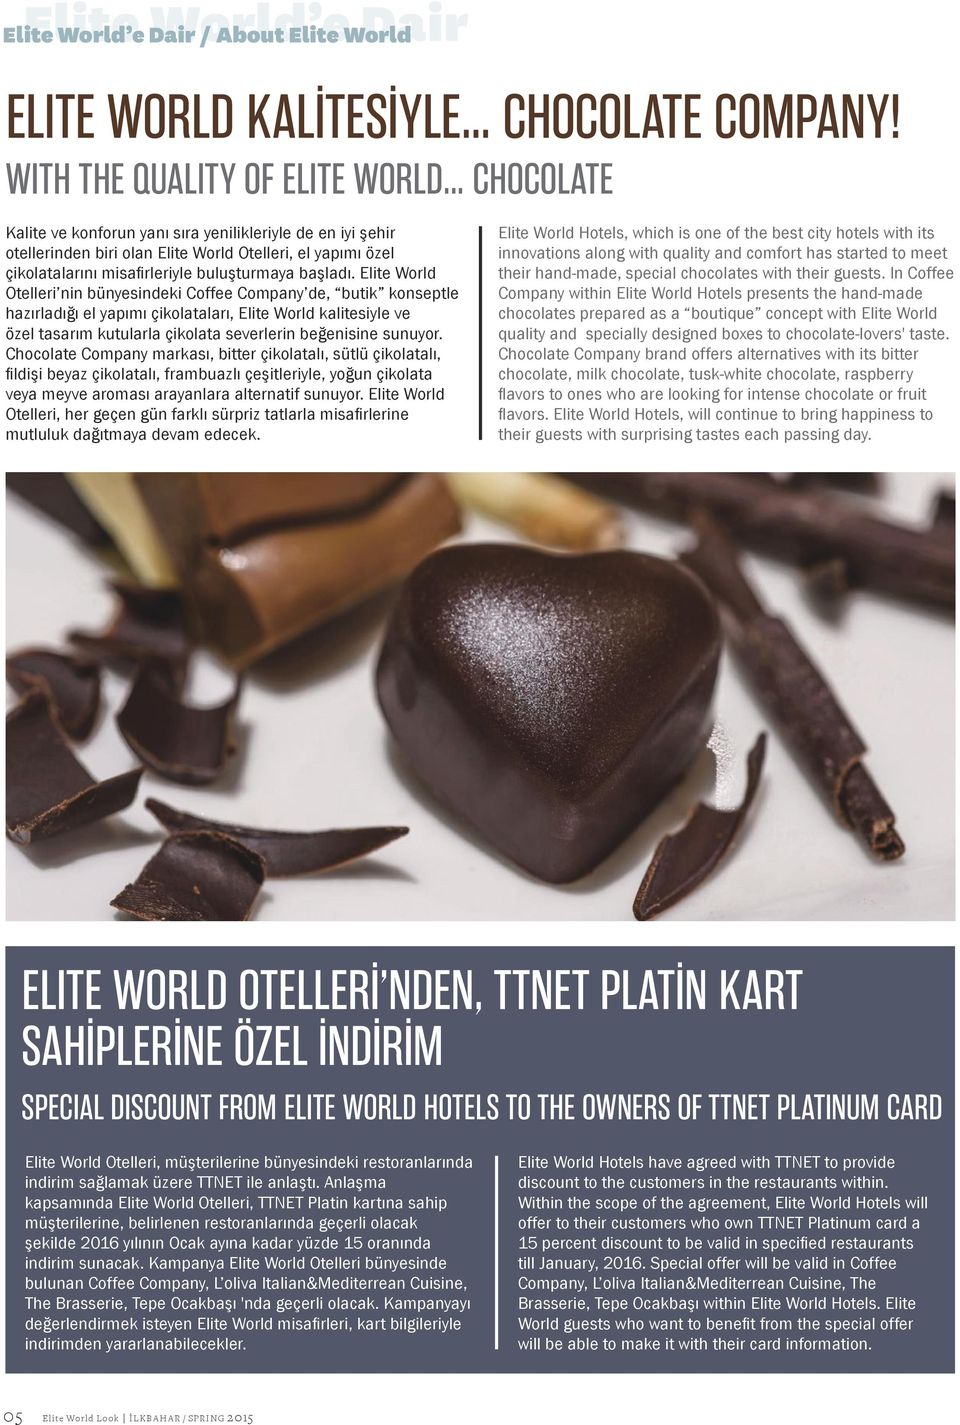 Elite World Otelleri nin bünyesindeki Coffee Company de, butik konseptle hazırladığı el yapımı çikolataları, Elite World kalitesiyle ve özel tasarım kutularla çikolata severlerin beğenisine sunuyor.